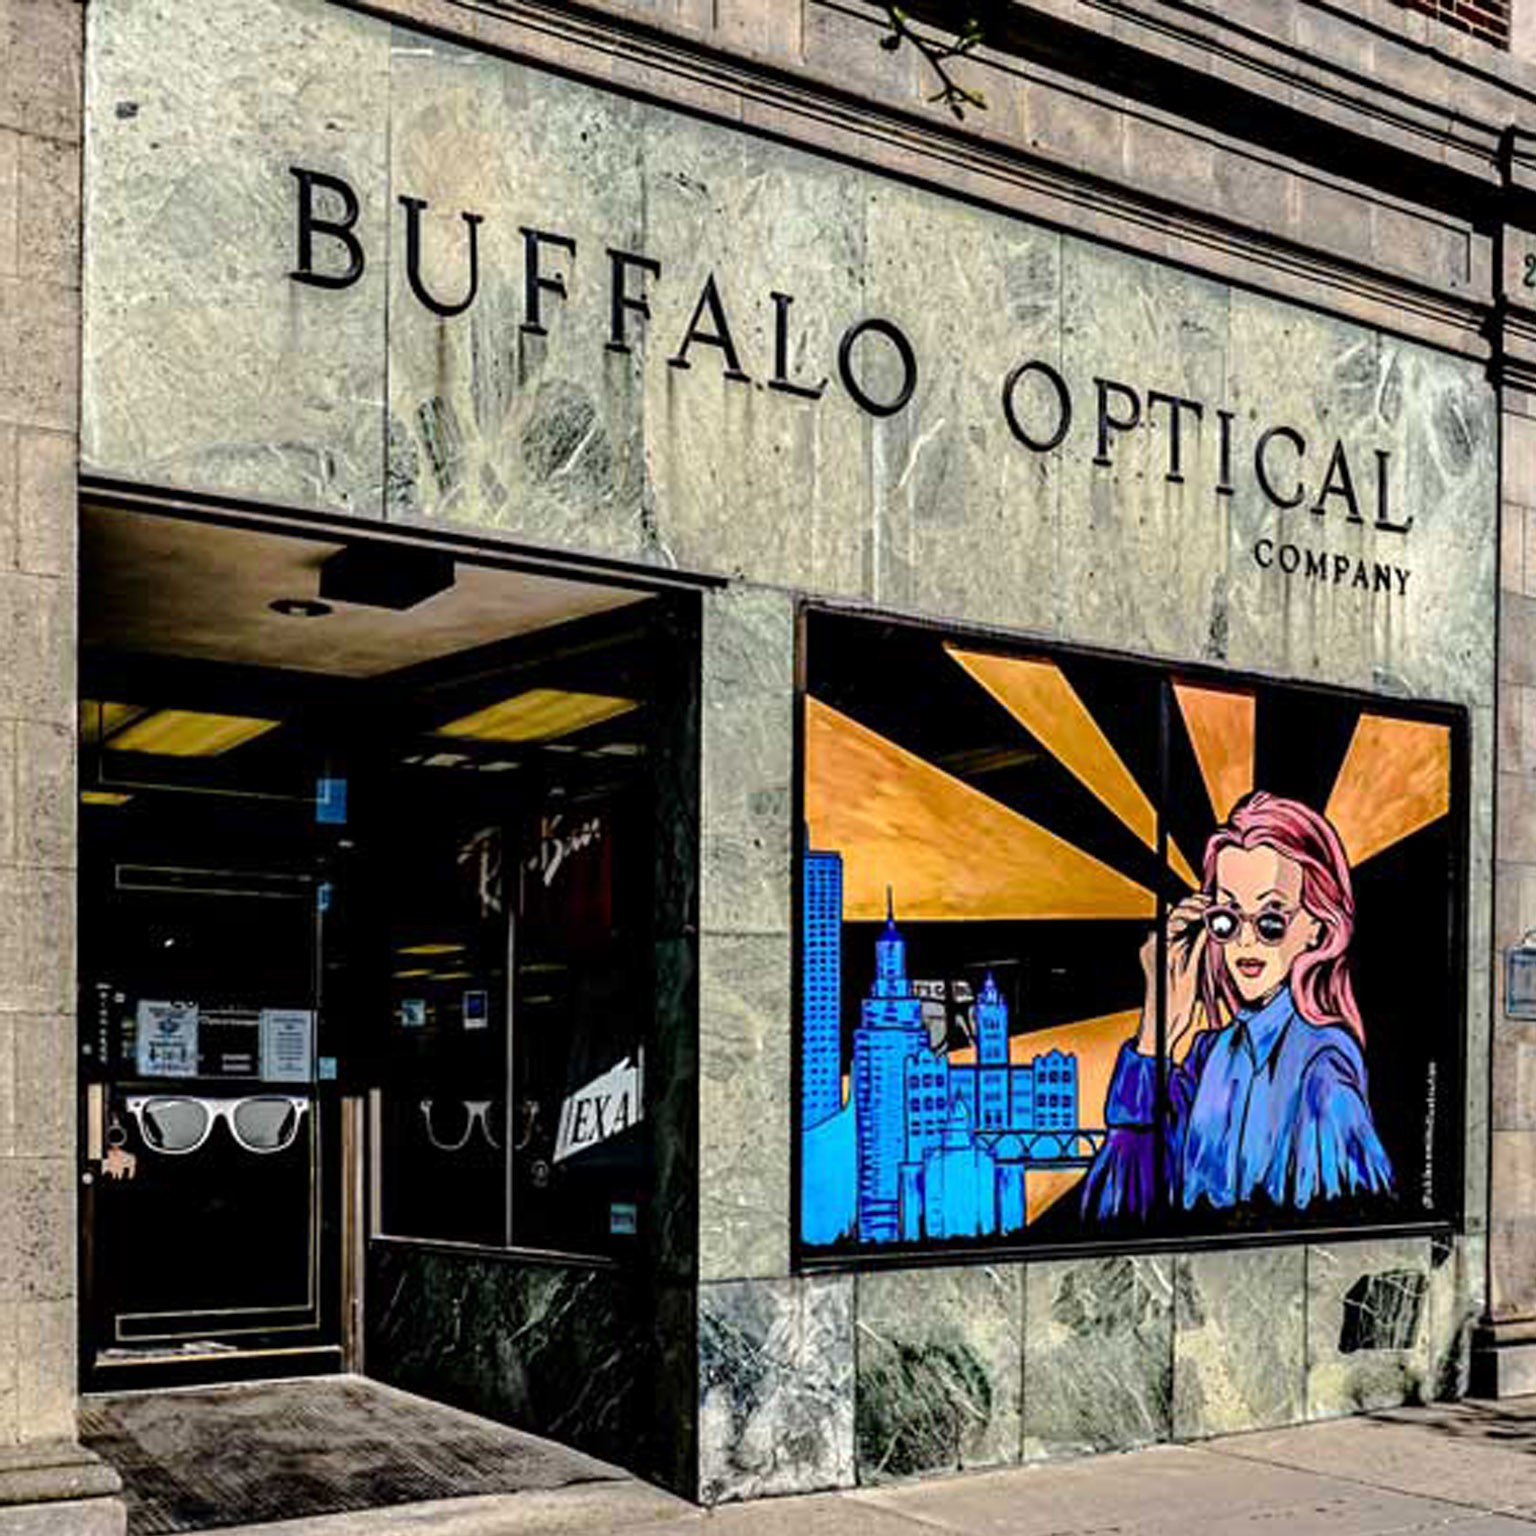 Eye Care center in Buffalo